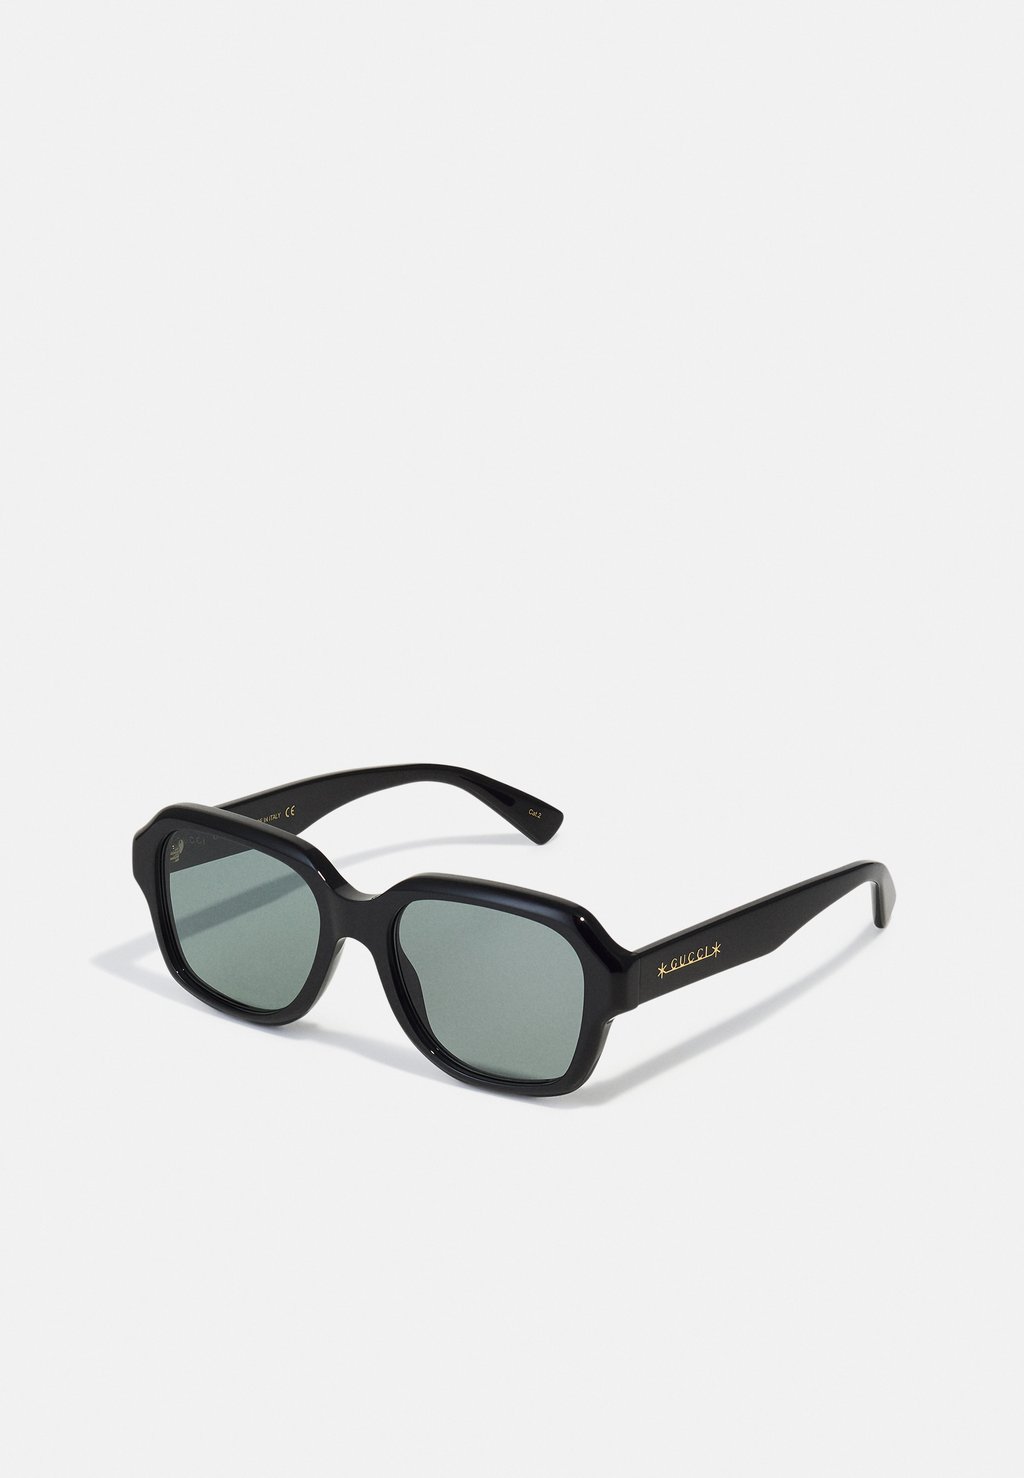 Солнцезащитные очки UNISEX Gucci, цвет black солнцезащитные очки unisex gucci цвет black silver coloured